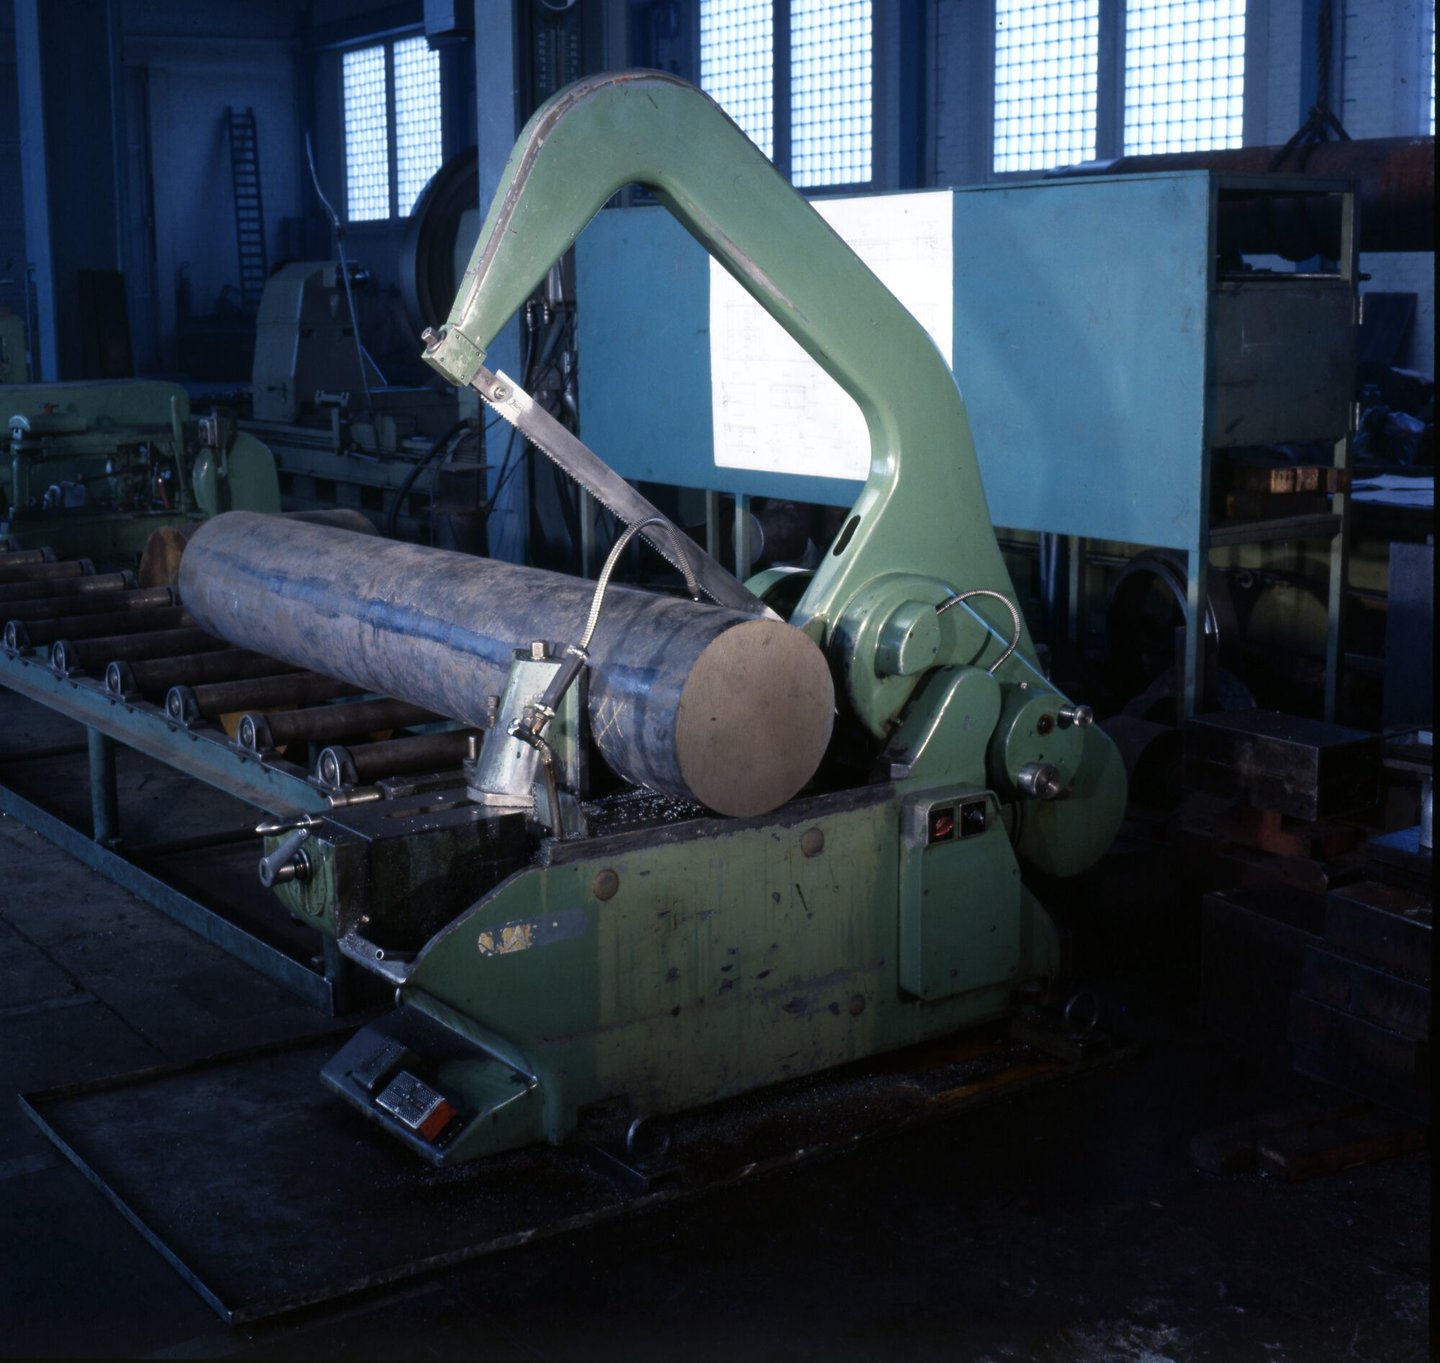 Beugelzaagmachine in machinewerkplaats van Gentse Metaalwerken in Gent